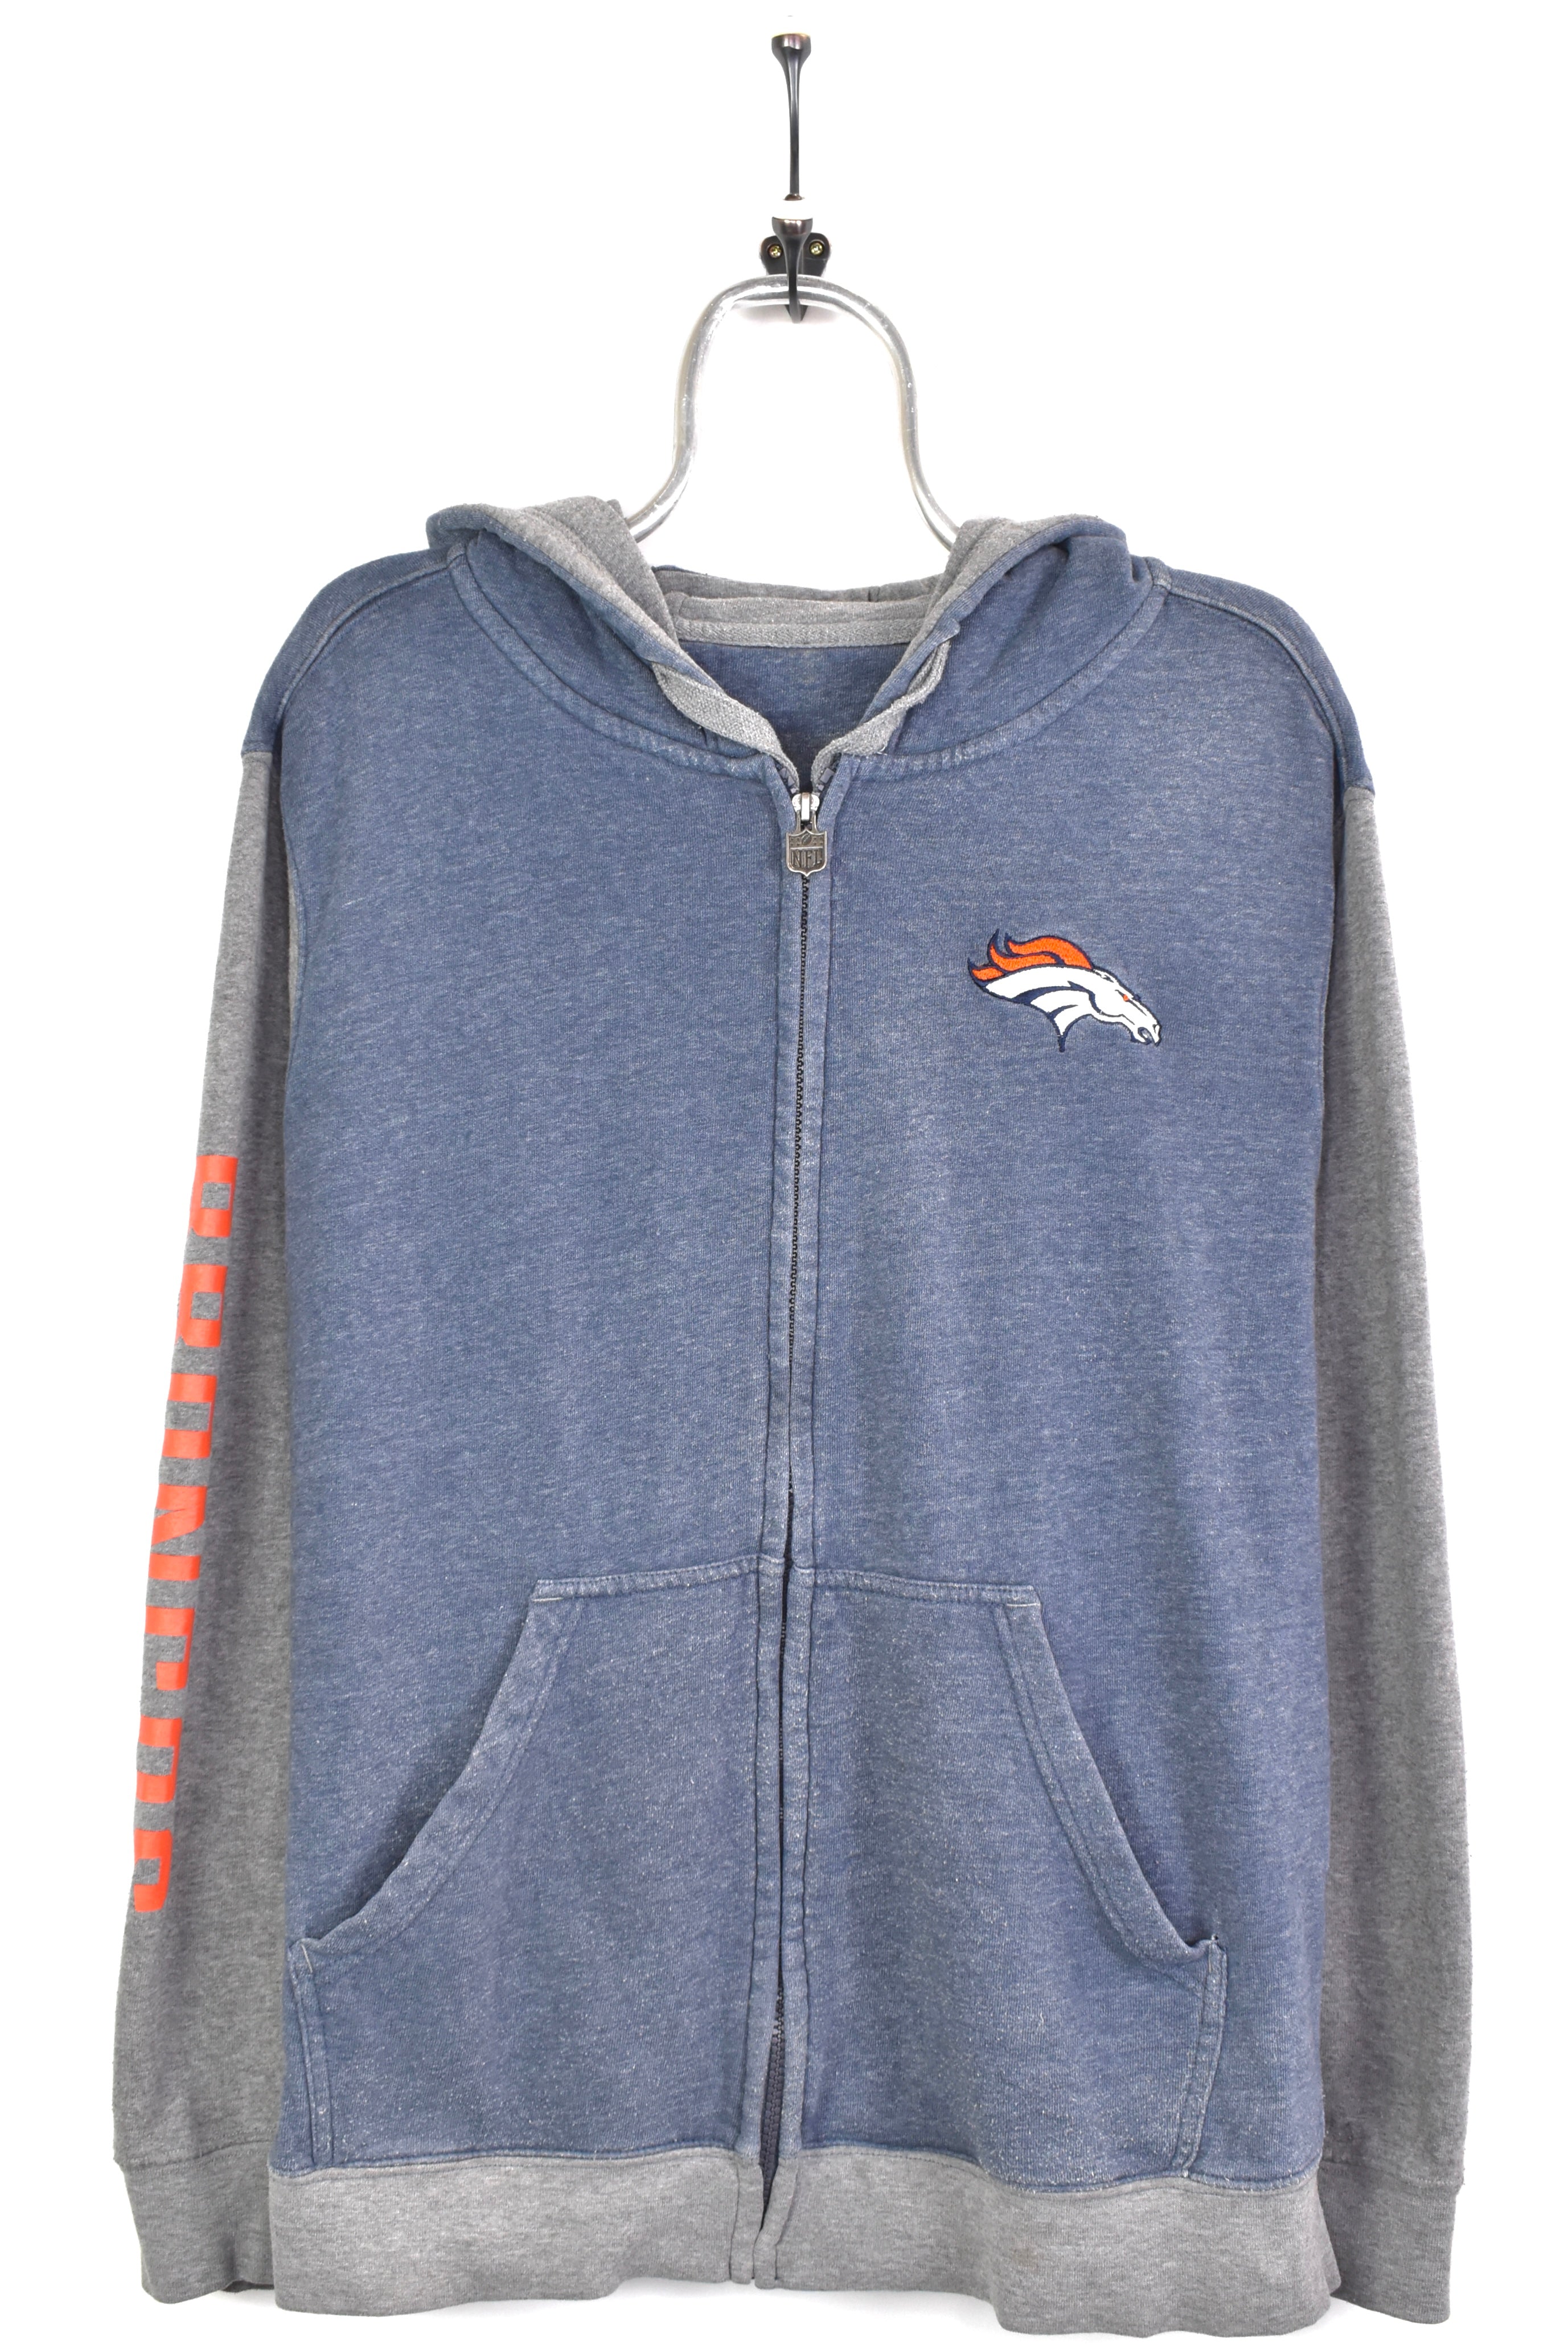 Vintage NFL Denver Broncos embroidered grey hoodie | Medium PRO SPORT